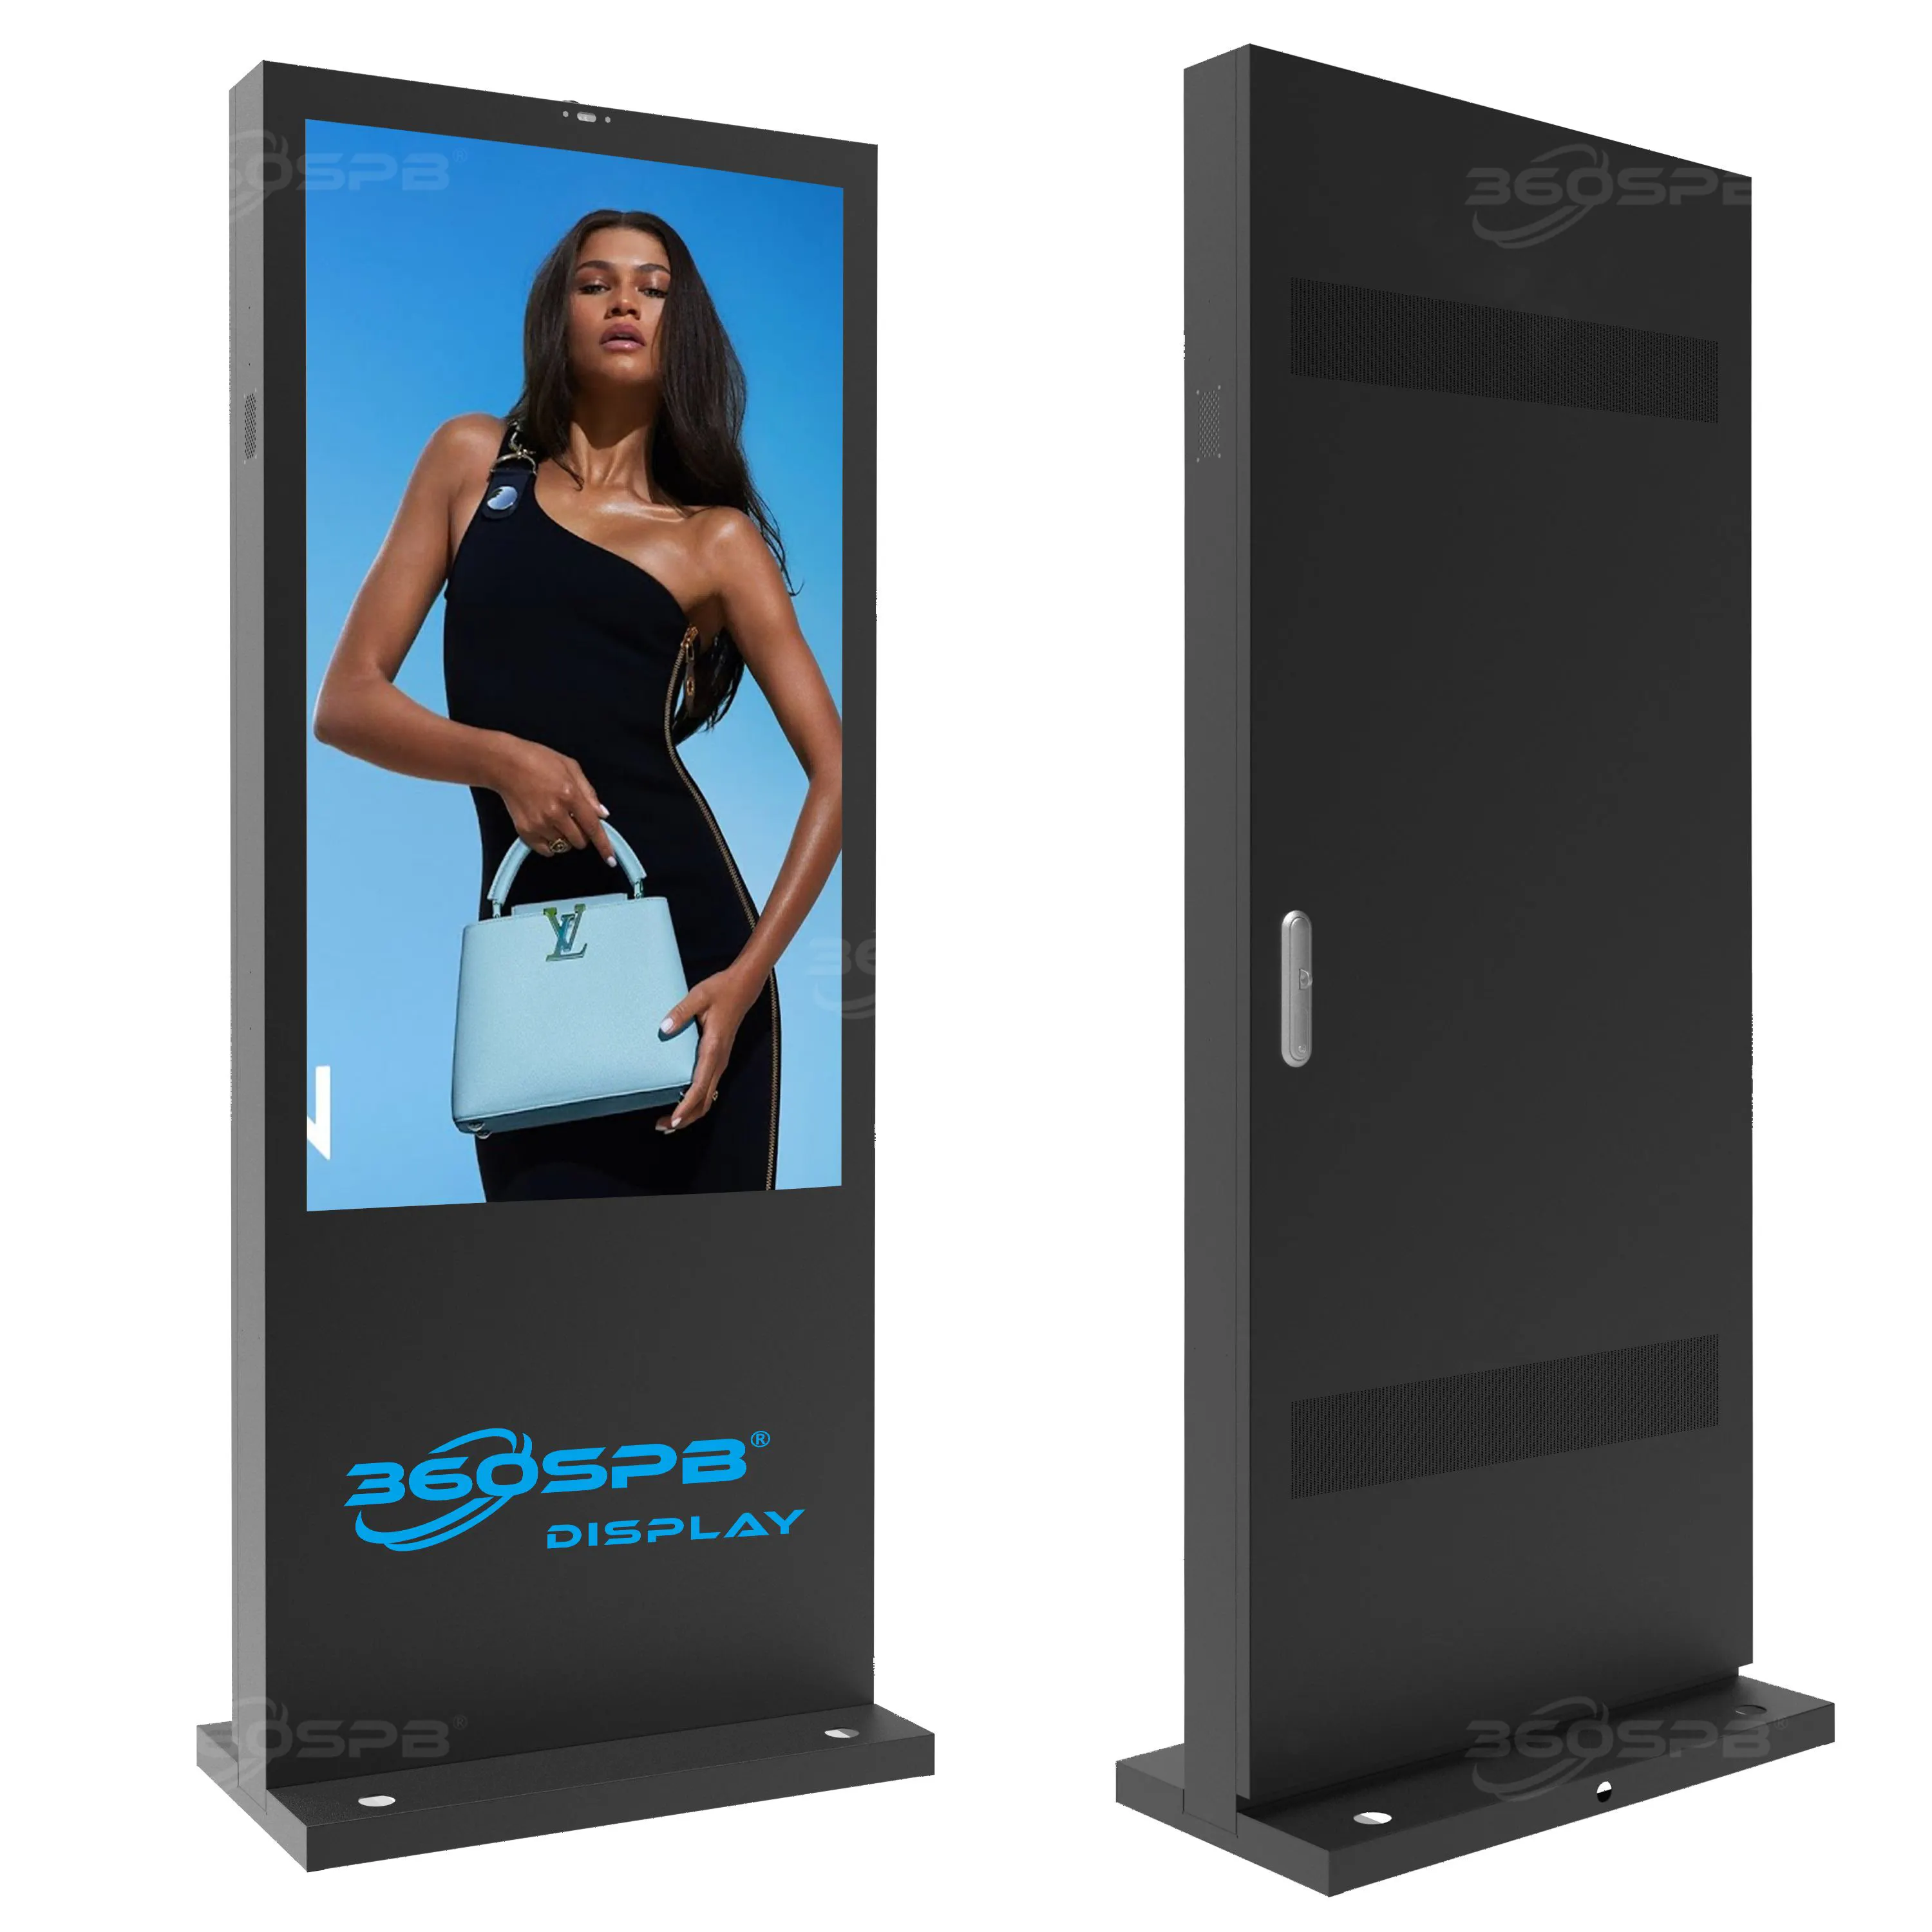 360SPBタイプB49インチLCDディスプレイ広告スクリーン4Kビデオ屋外スタンディングデジタルサイネージAndroid11タッチスクリーンモニター